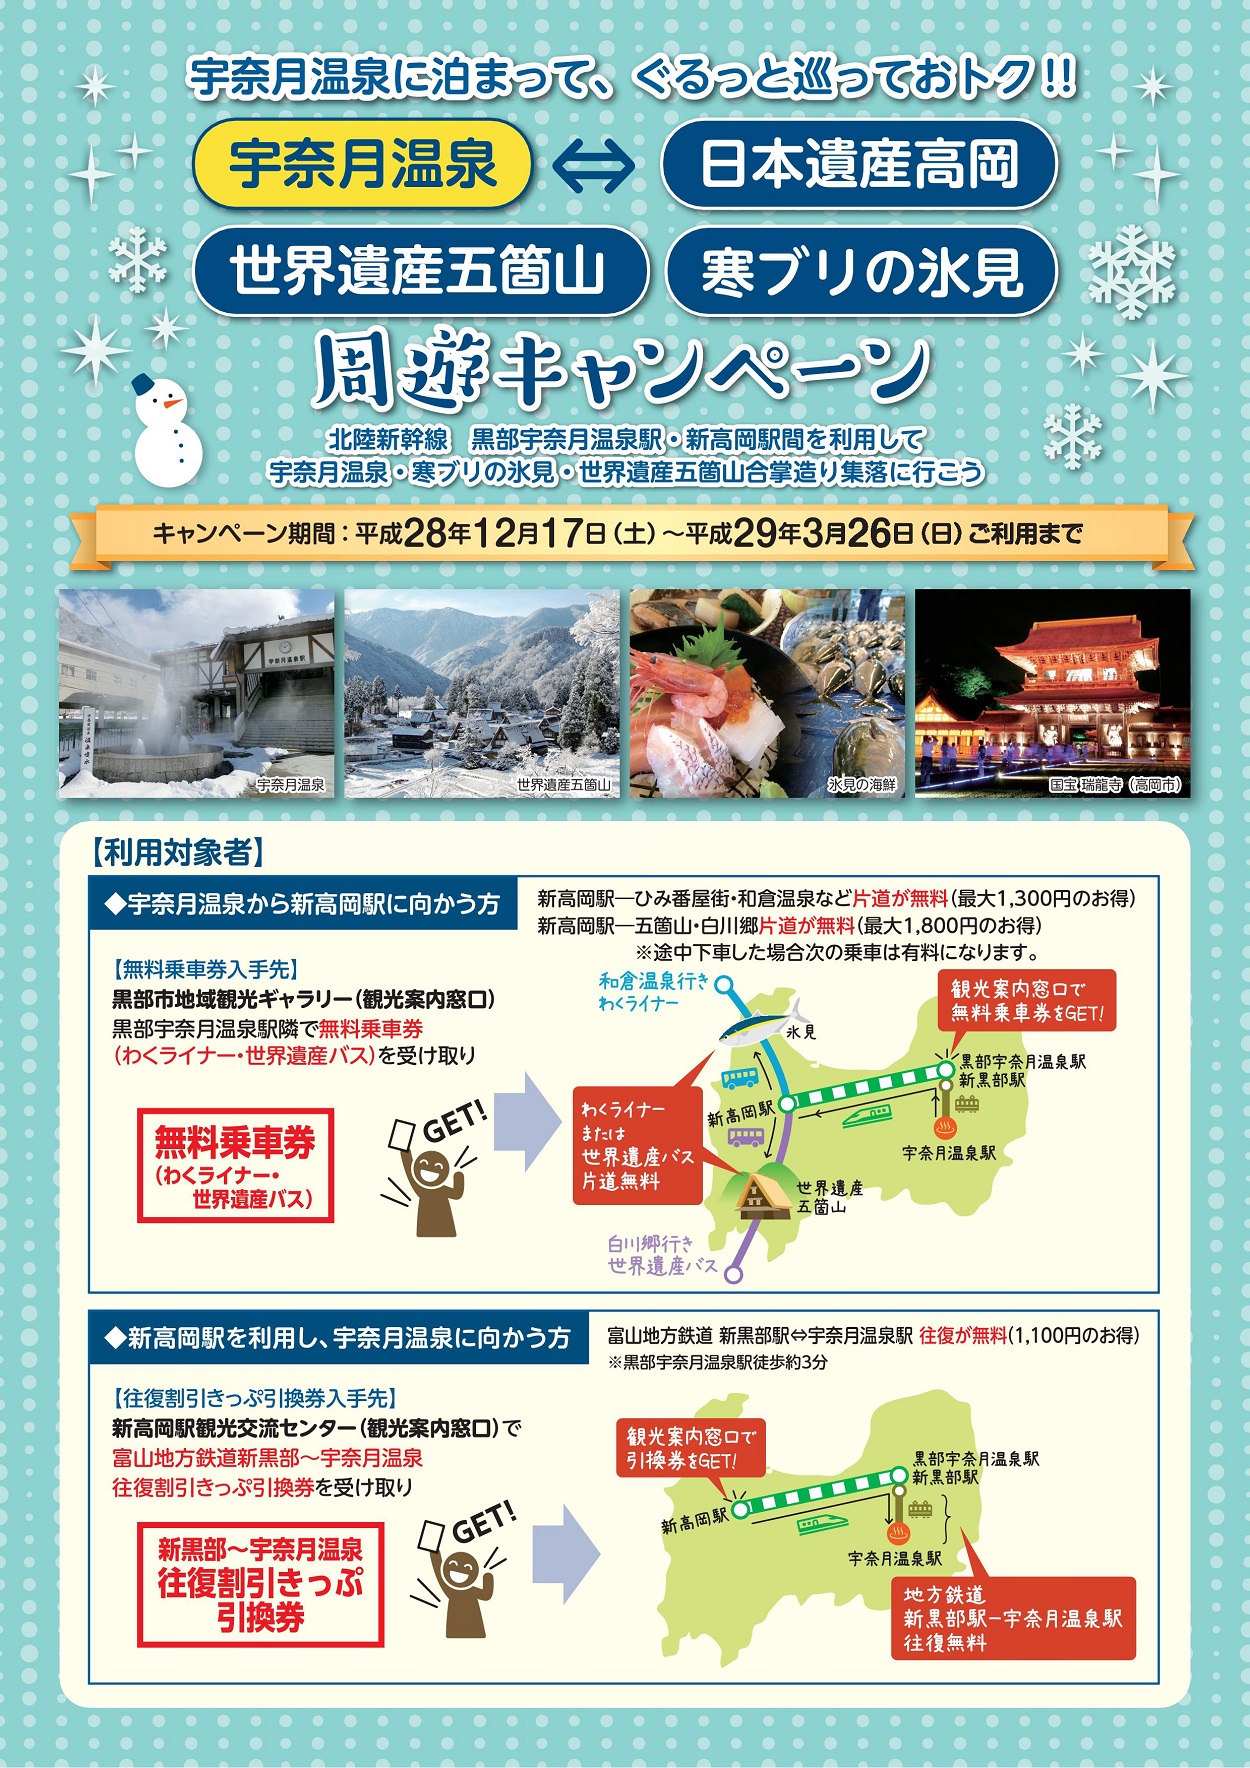 冬の富山周遊キャンペーンを実施します 富山地方鉄道株式会社